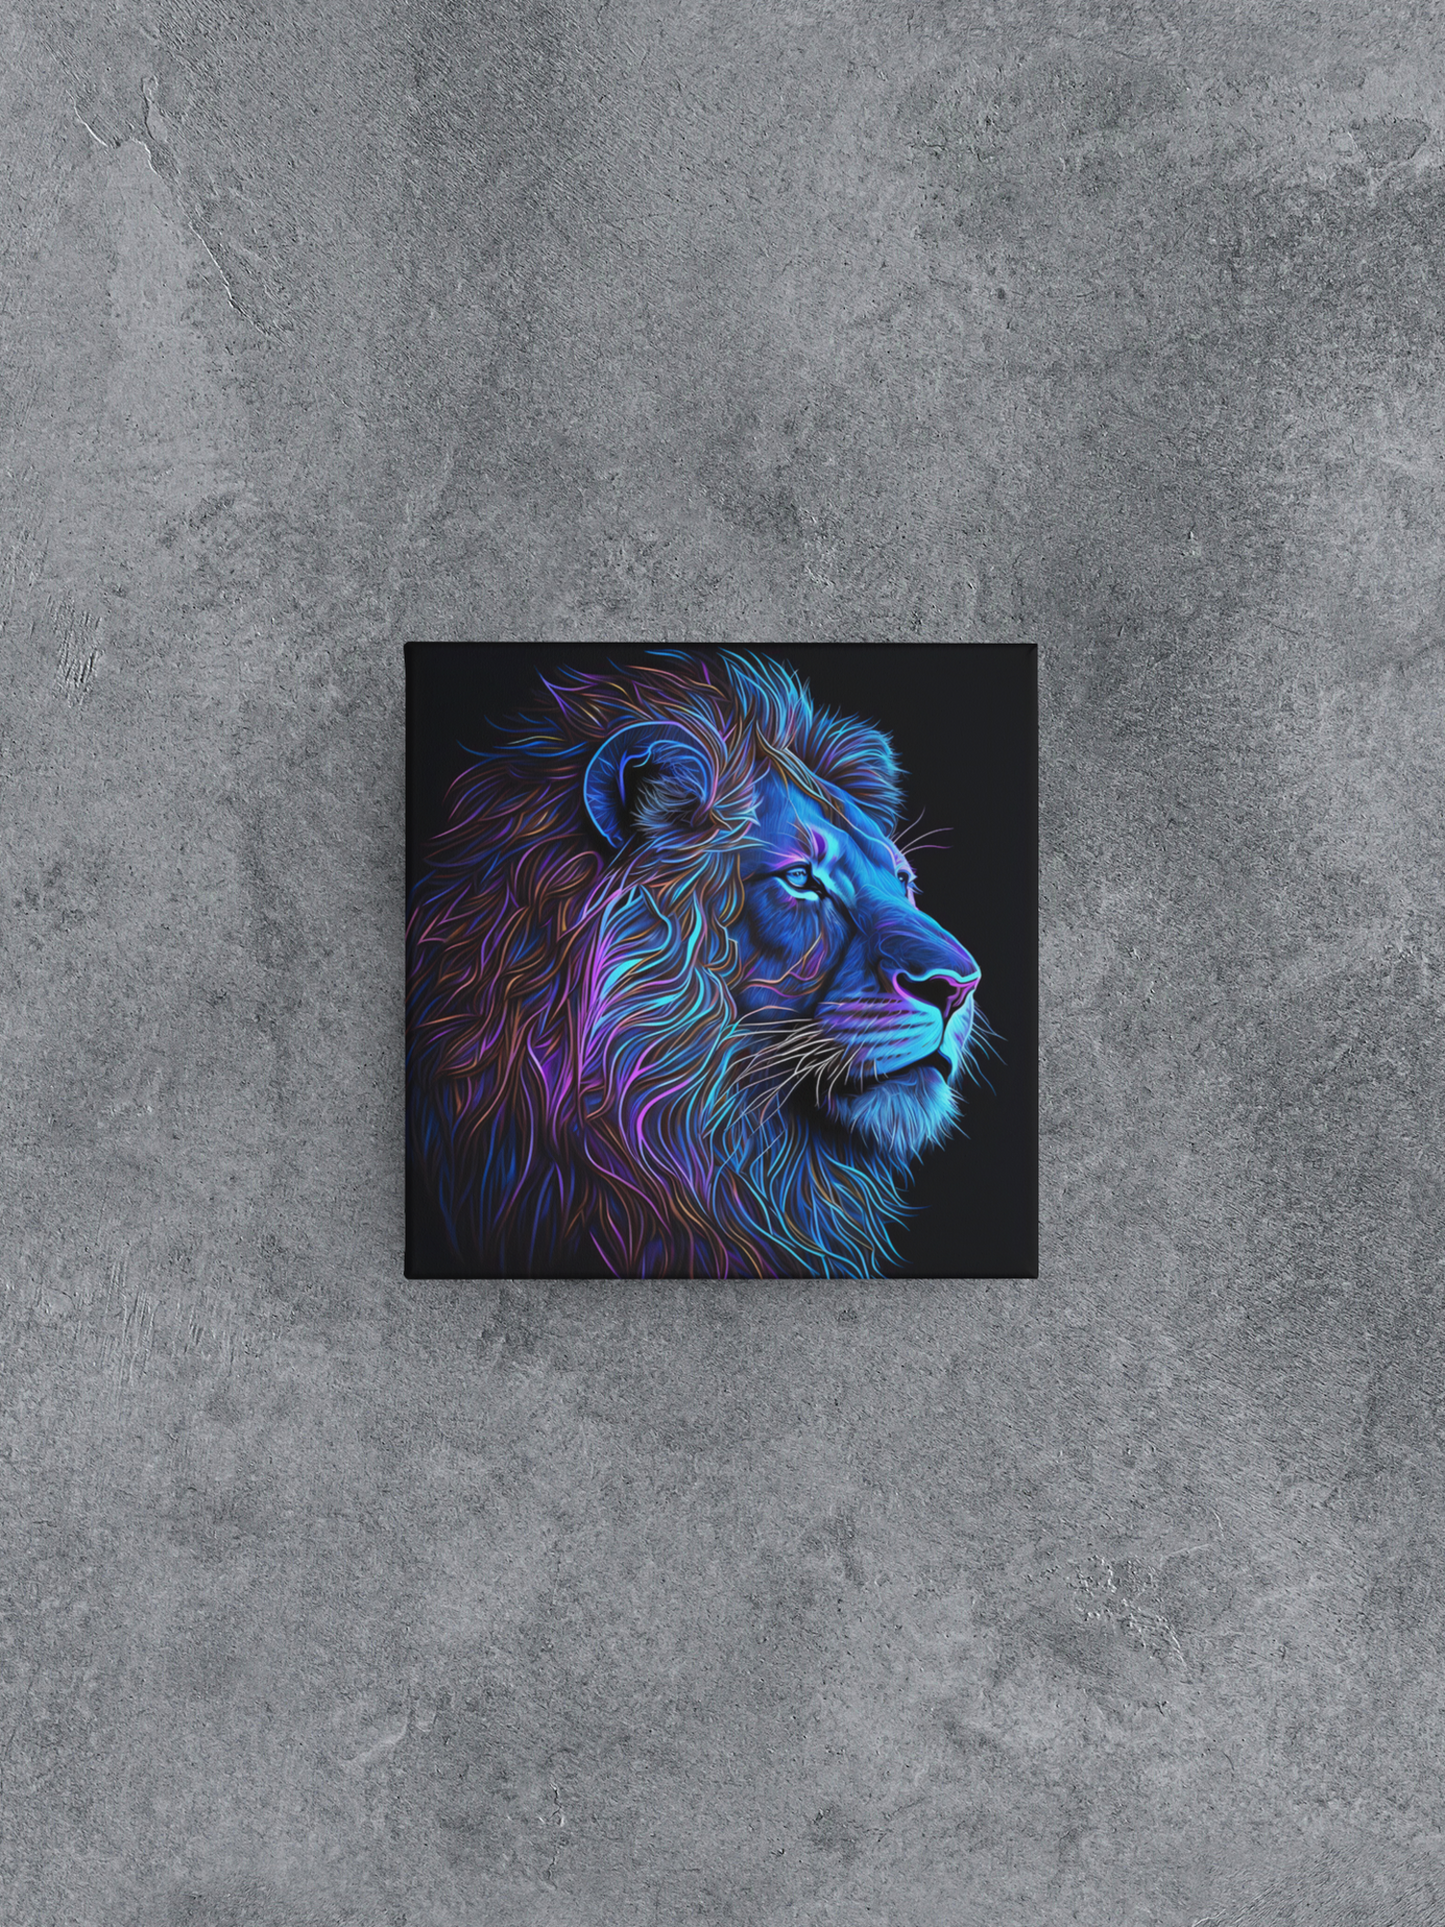 Schwarzlicht-Löwen-Leinwand-Wandkunst, Neon-Löwen-Leinwand-Malerei, leuchtende Löwen-Malerei auf schwarzem Hintergrund, bunte Löwen-Leinwand